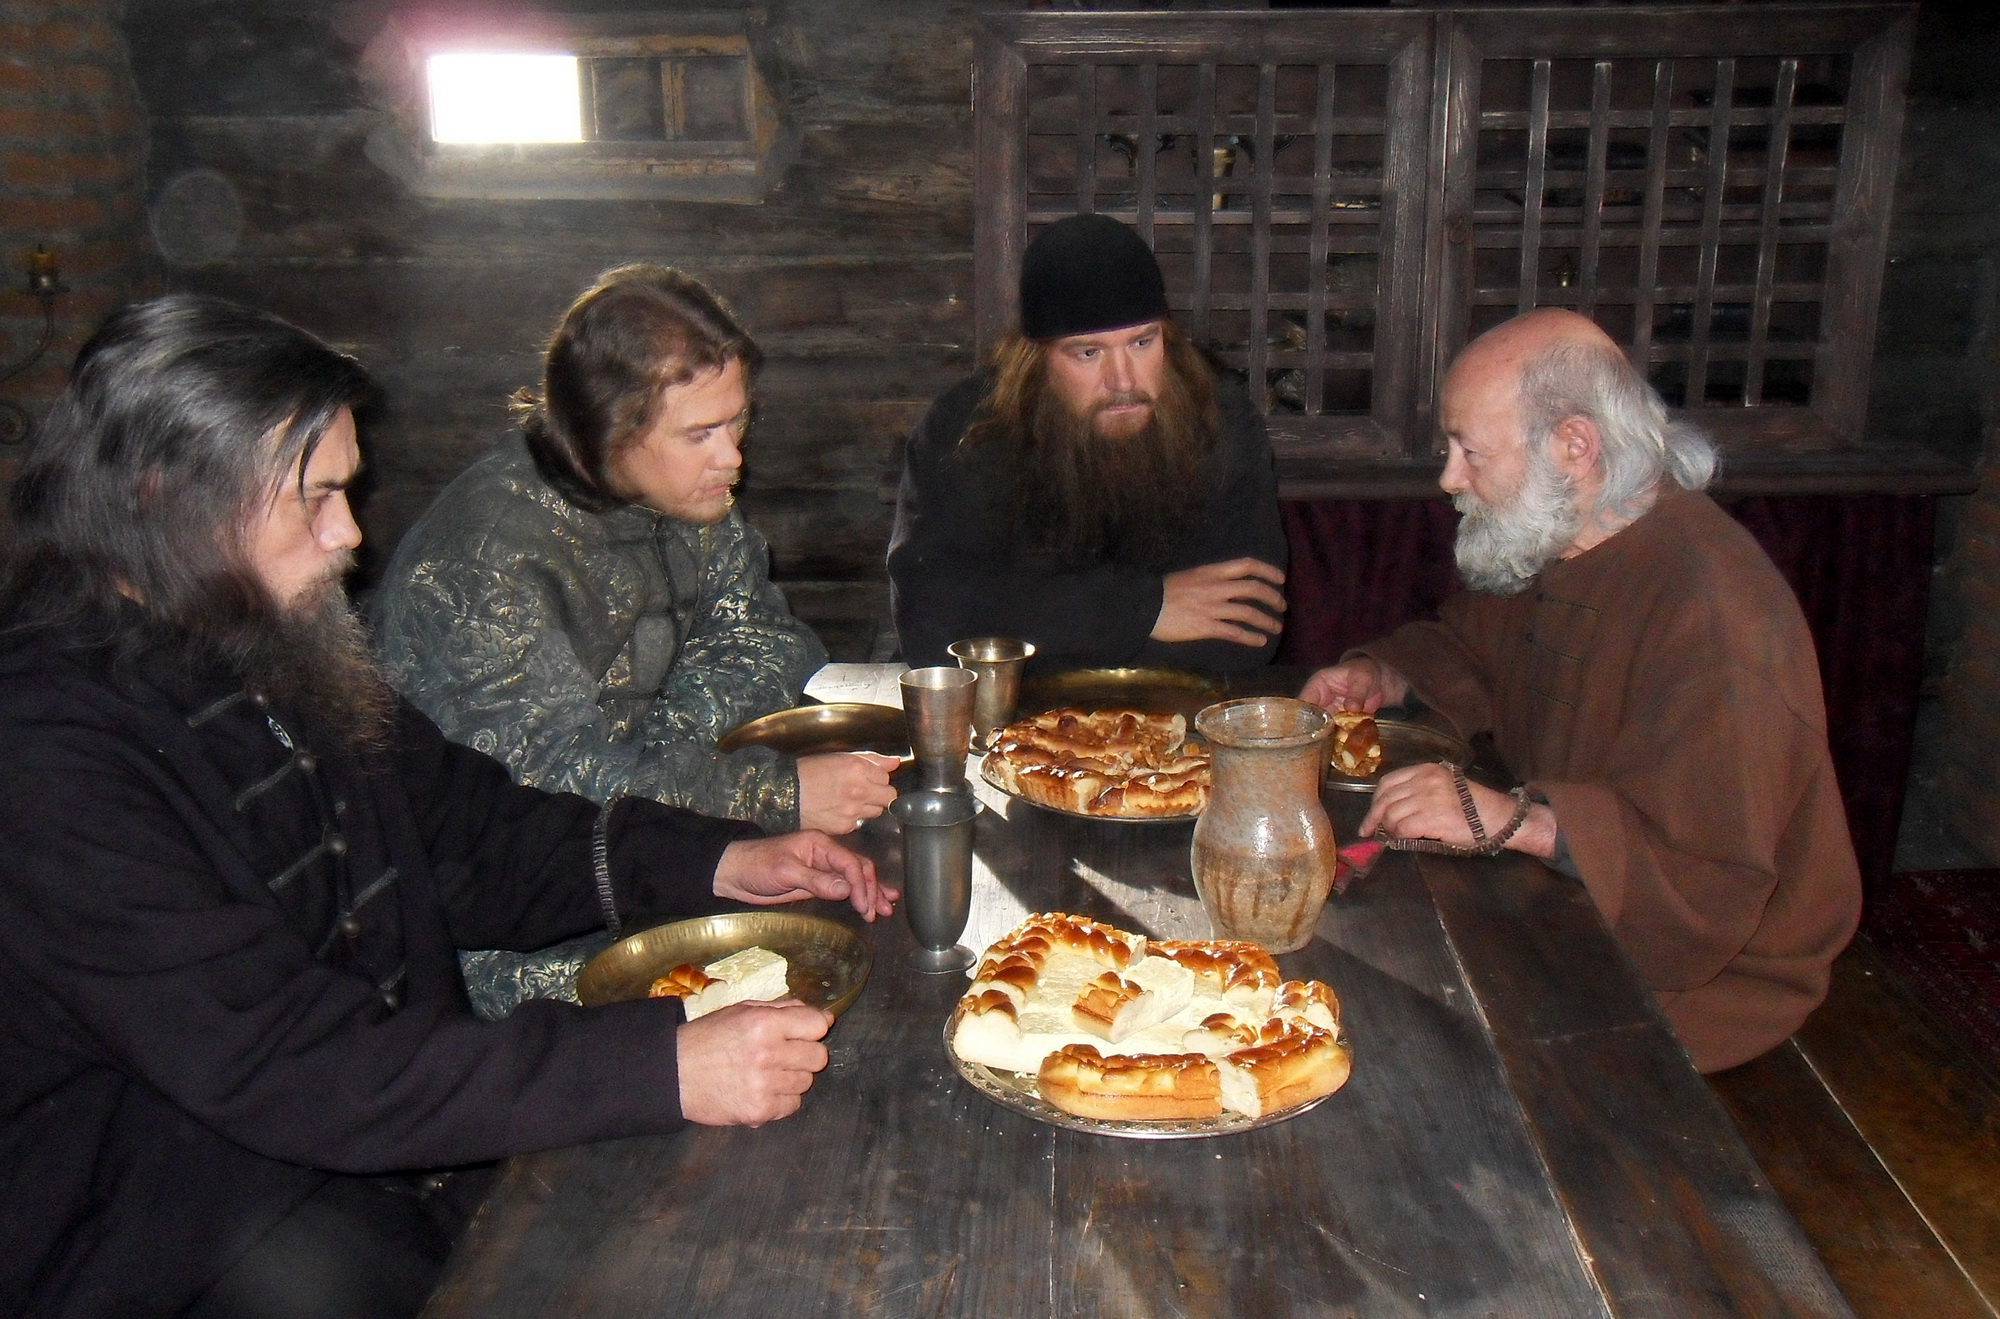 Пироги и караваи были излюбленным блюдом на монастырской трапезе в праздники